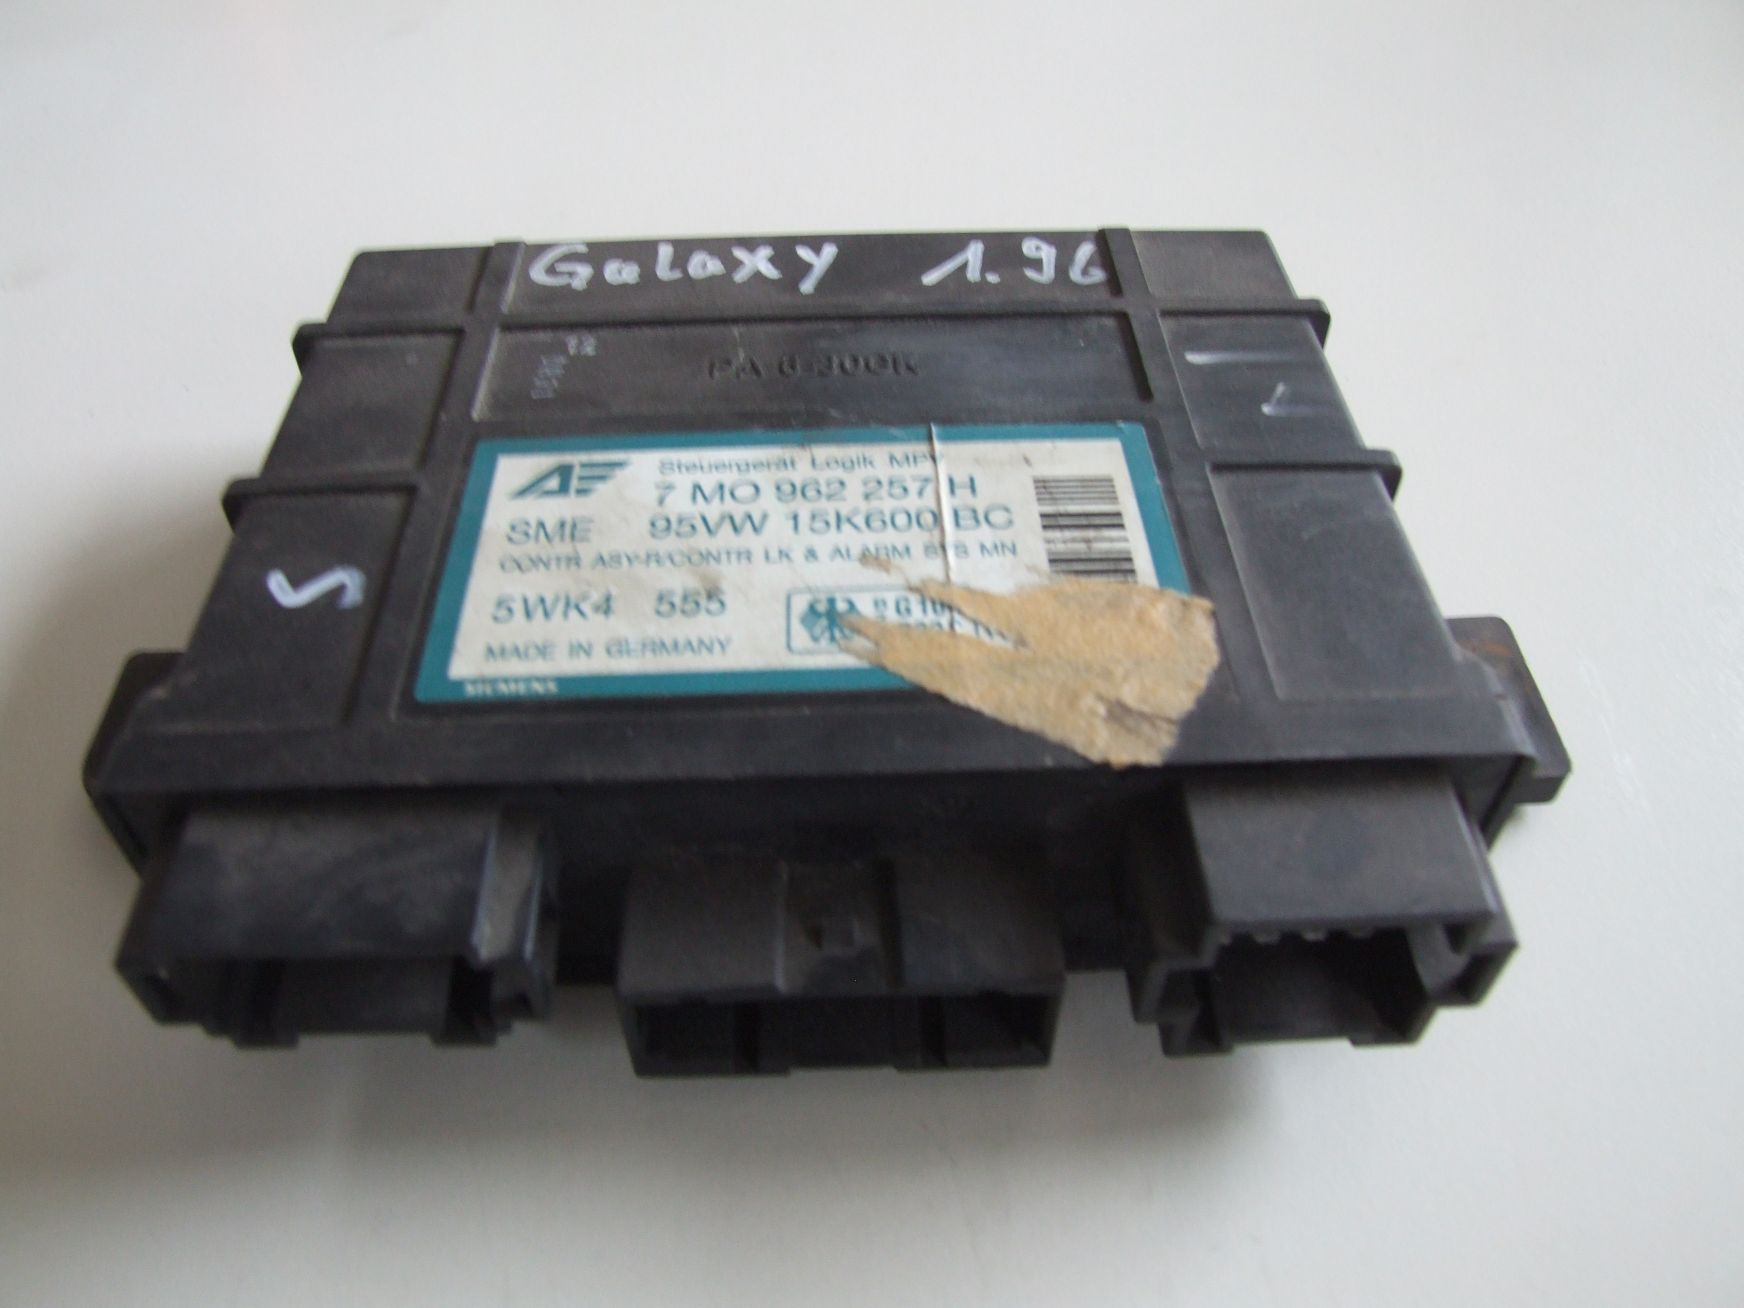 Komfortsteuergerät aus Ford Galaxy Siemens 95VW15K600BC / 7M0962257H (gebraucht)